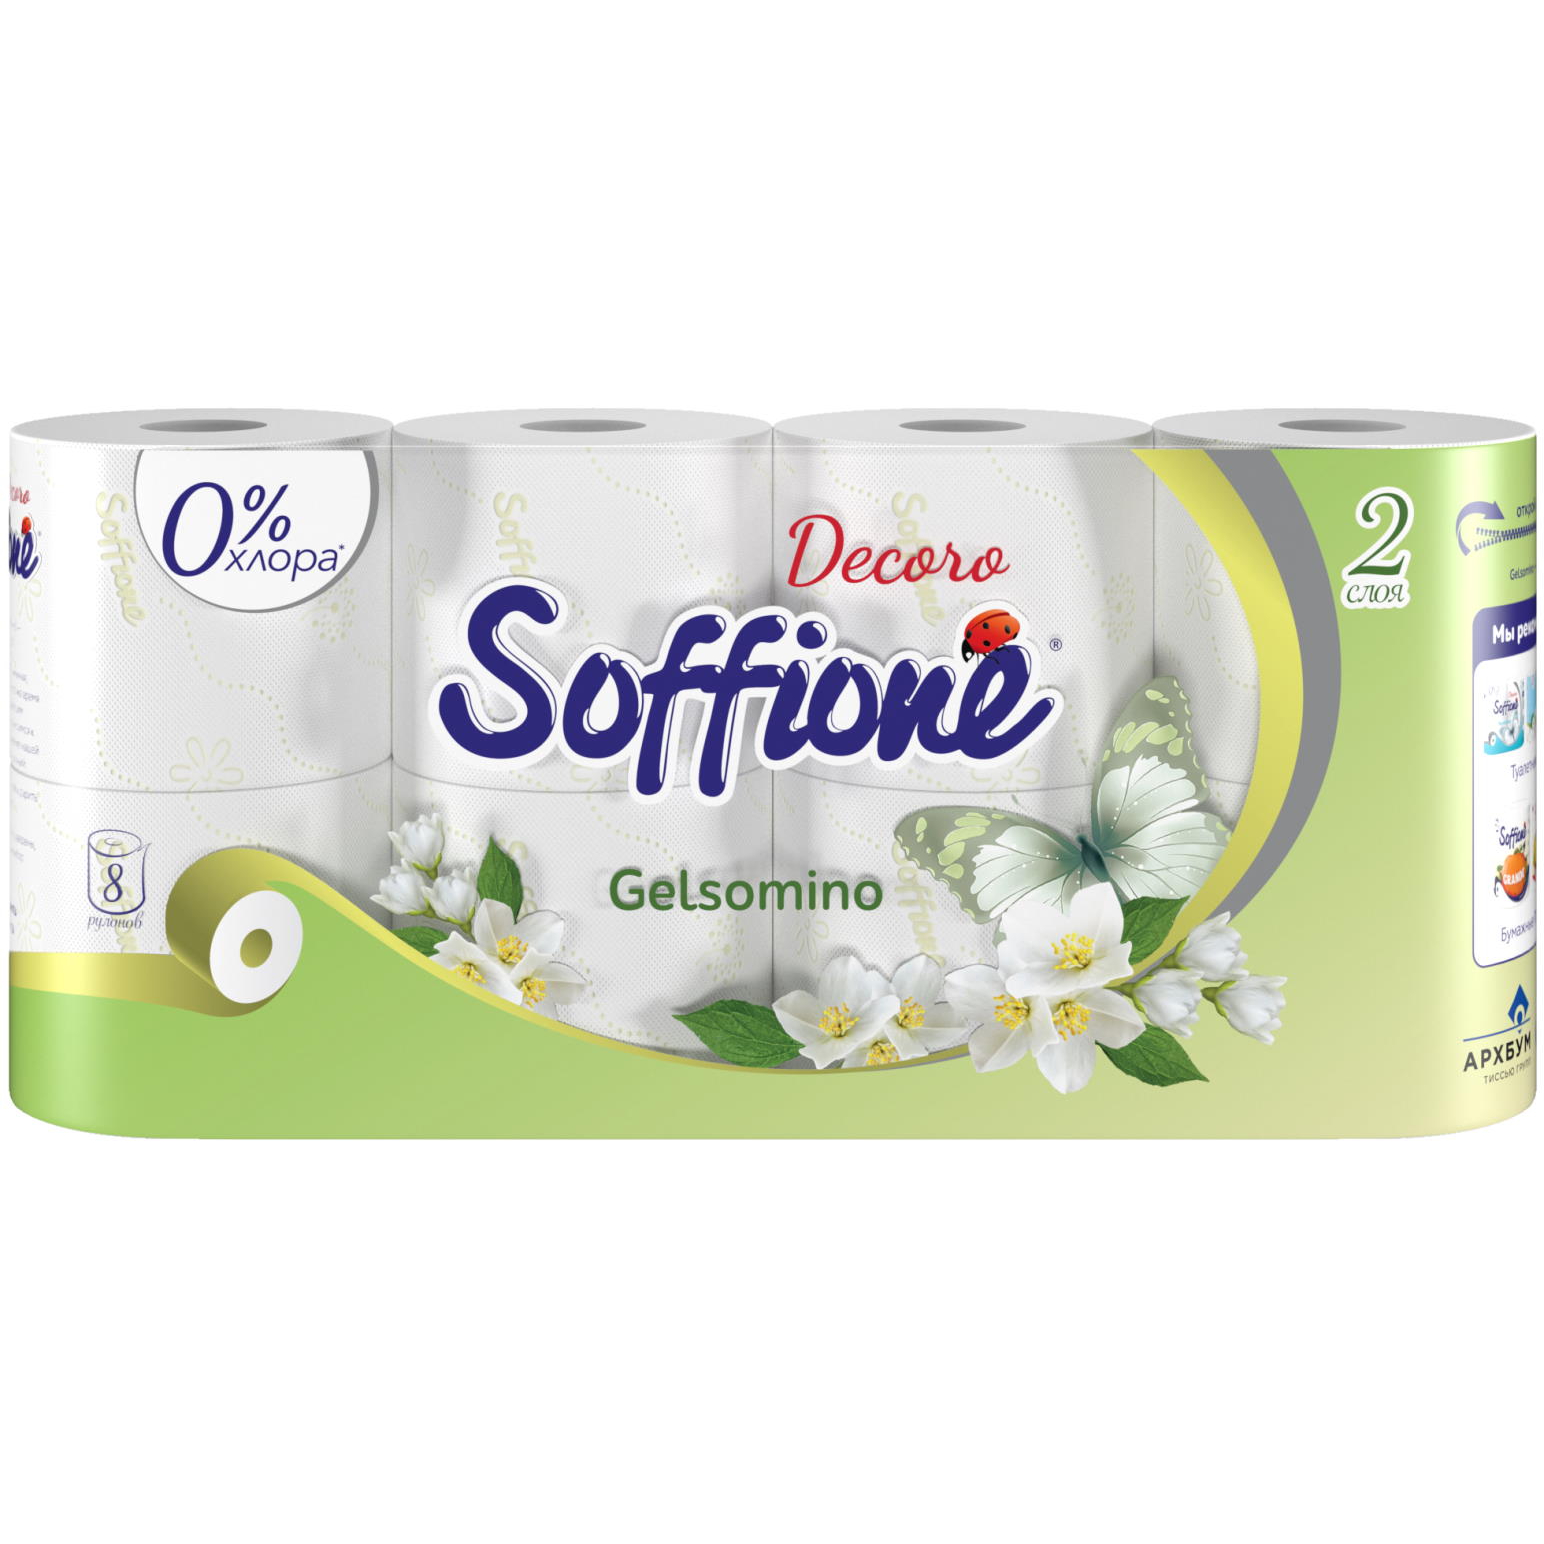 Бумага Soffione decoro gelsomino 2 слоя, 8 рулонов, цвет белый - фото 1